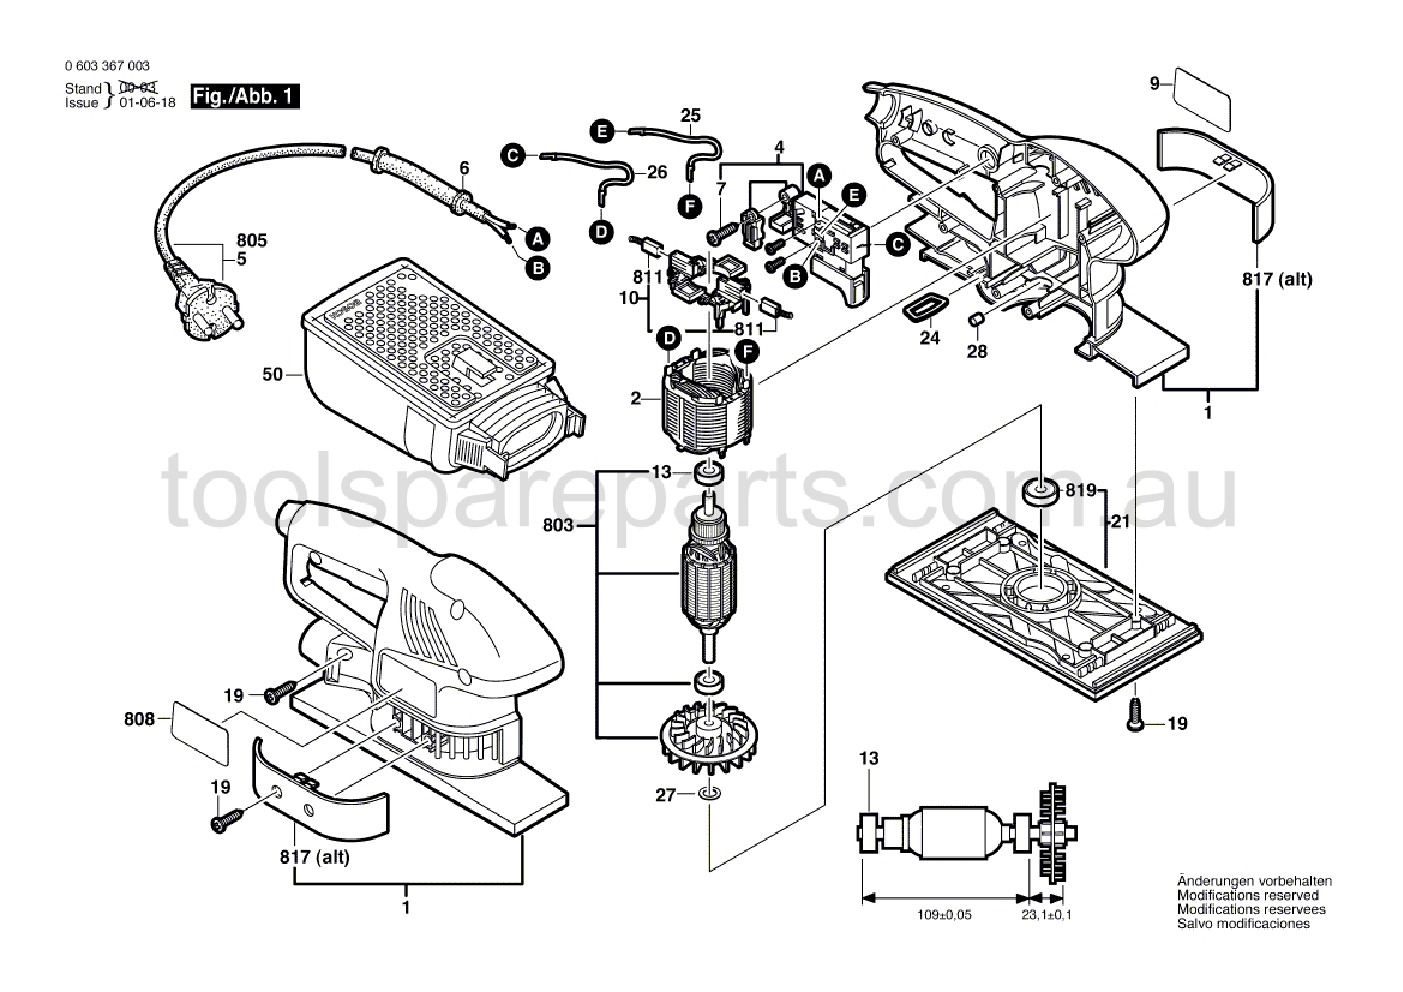 Bosch PSS 180 A 0603367037  Diagram 1